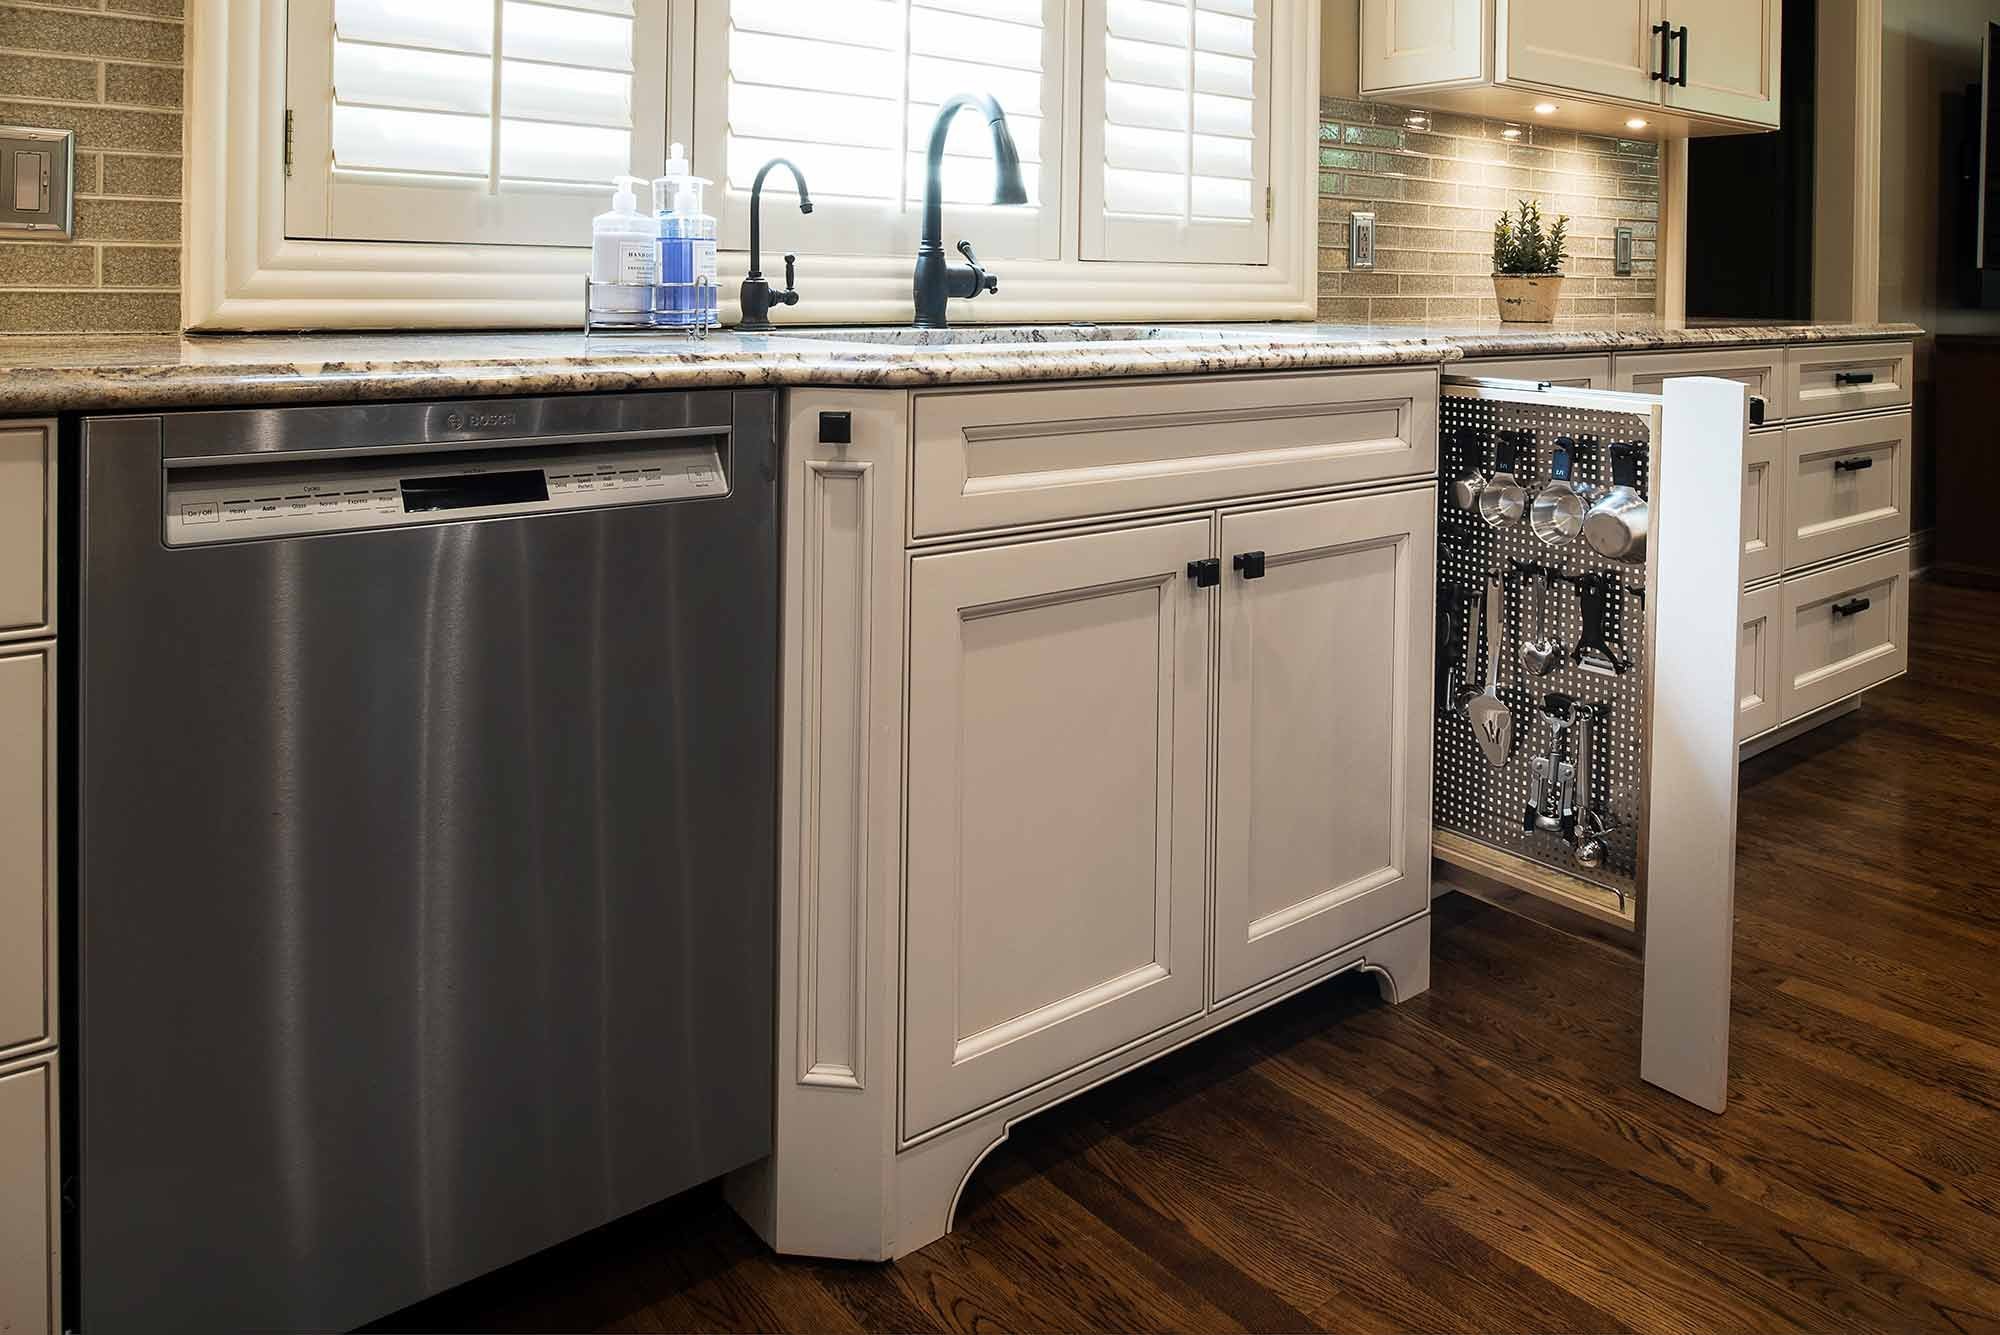 Встроенная посудомойка в кухне. Посудомоечная машина de Luxe DWB-k45-w. Встраиваемая посудомойка в кухне. Встроенная посудомойка на кухне. Встроенная посудомоечная машина в интерьере кухни.